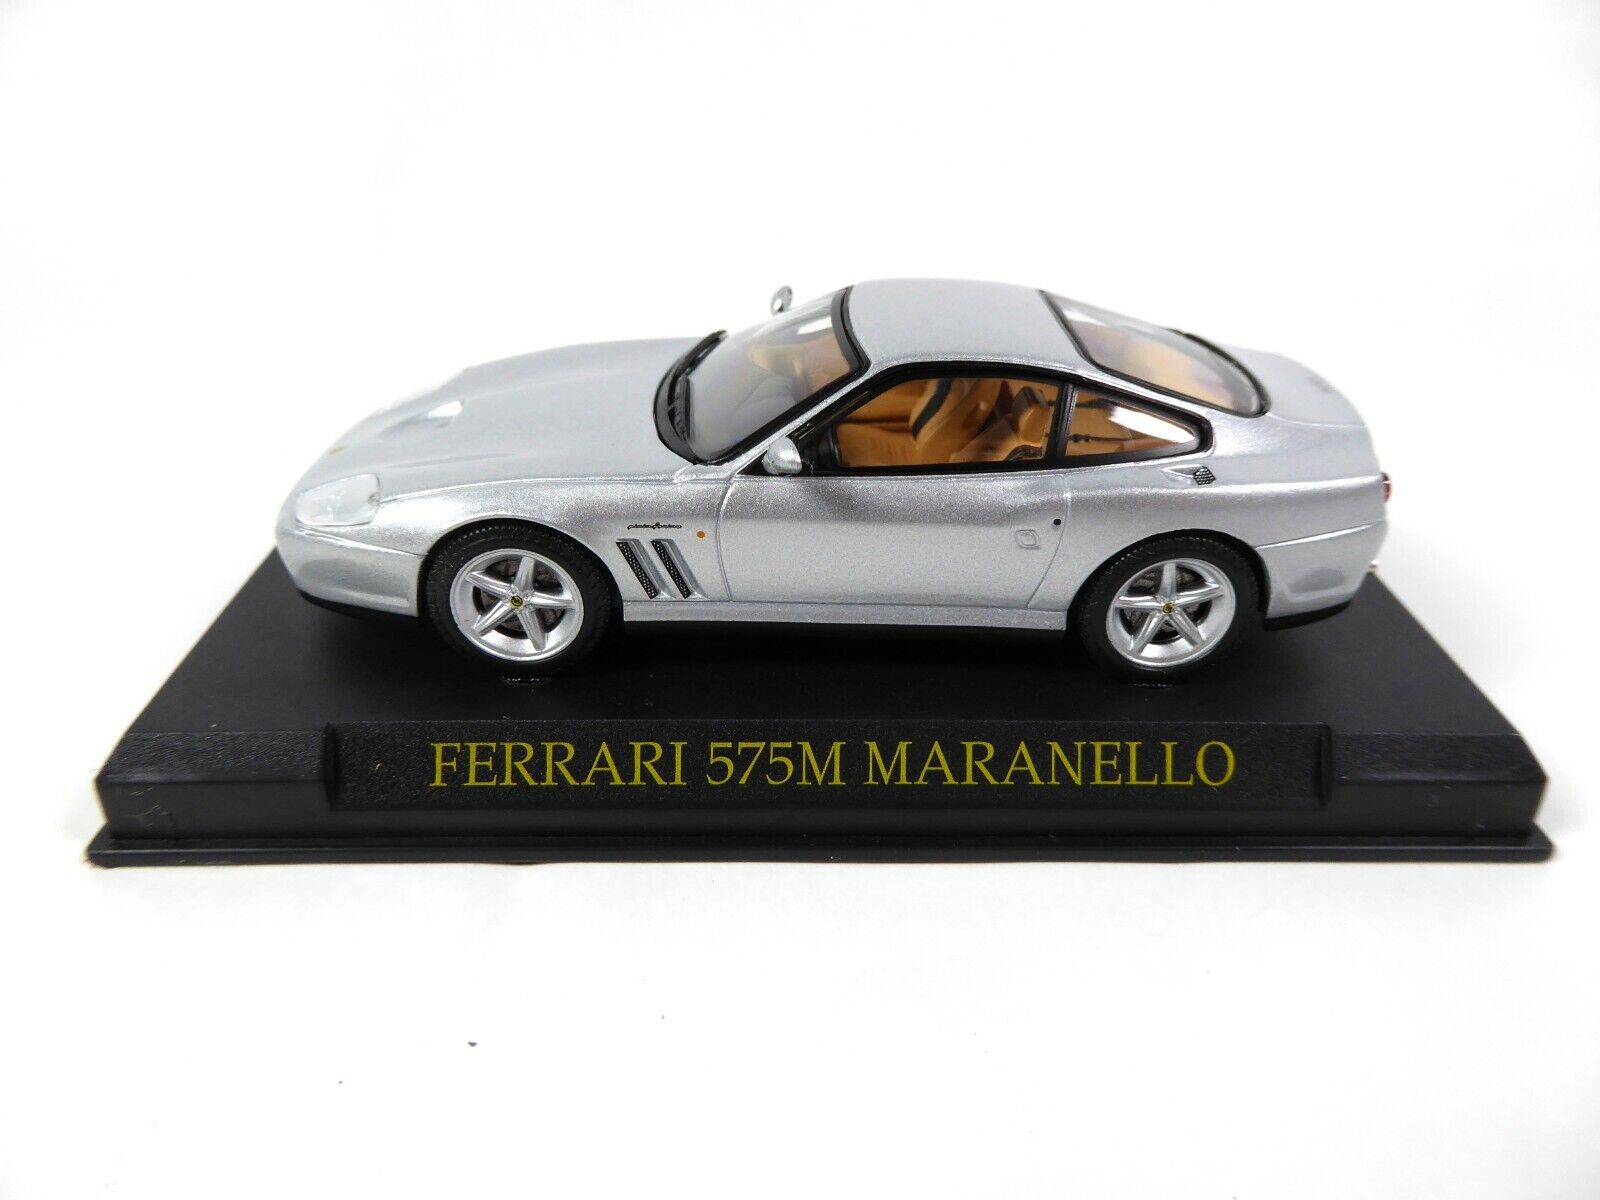 Ferrari 575 M Maranello 1:43 - IXO Altaya DIECAST MODEL CAR KJ20